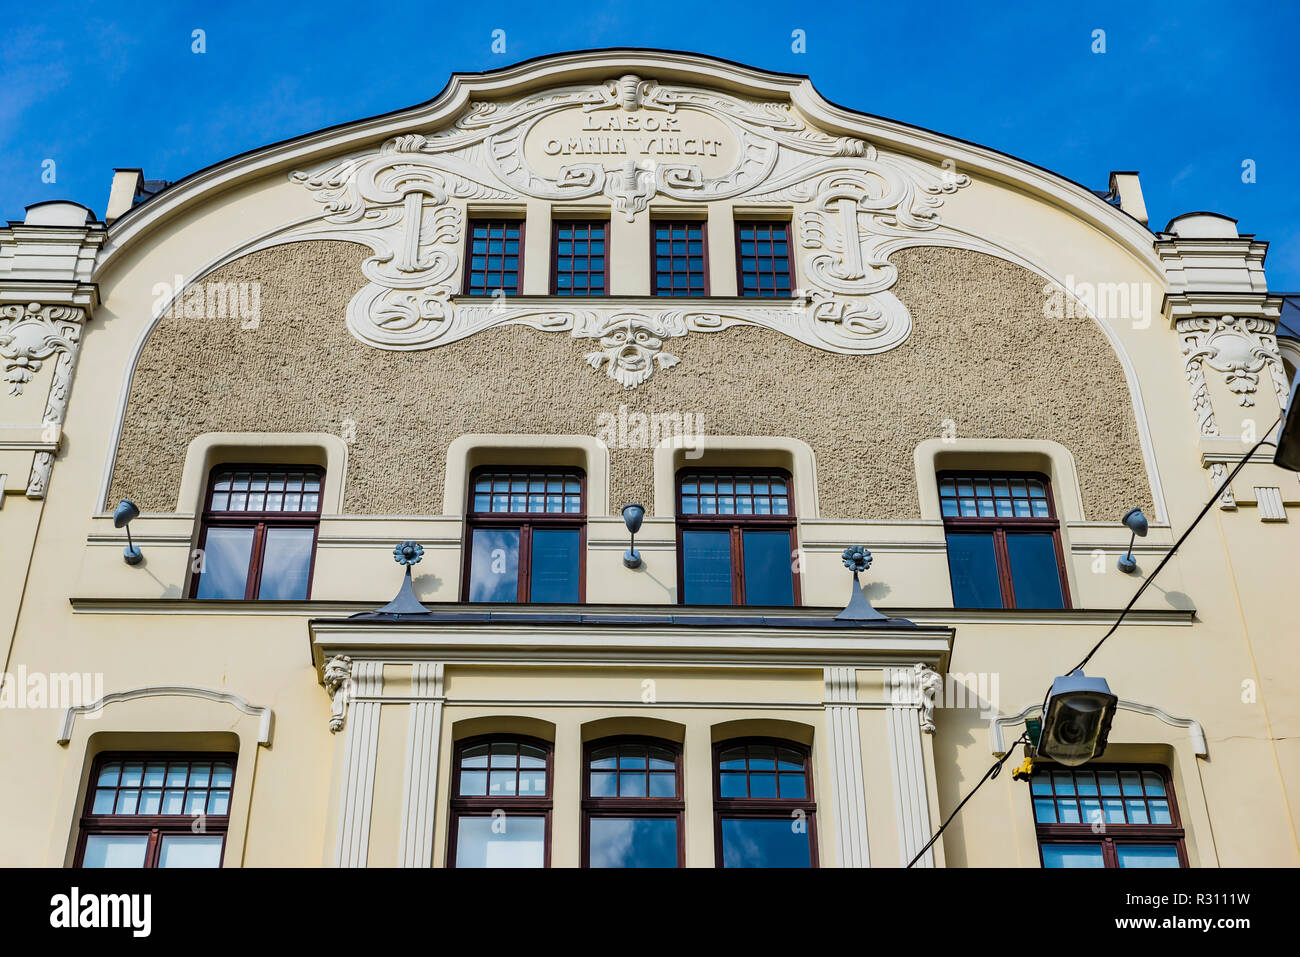 L'architecture Art Nouveau de Riga - Elizabetes iela 23 - Construit en 1903 par l'architecte Herman Hilbig. ABLV siège de la Banque mondiale. Riga, Lettonie, Pays Baltes, Banque D'Images